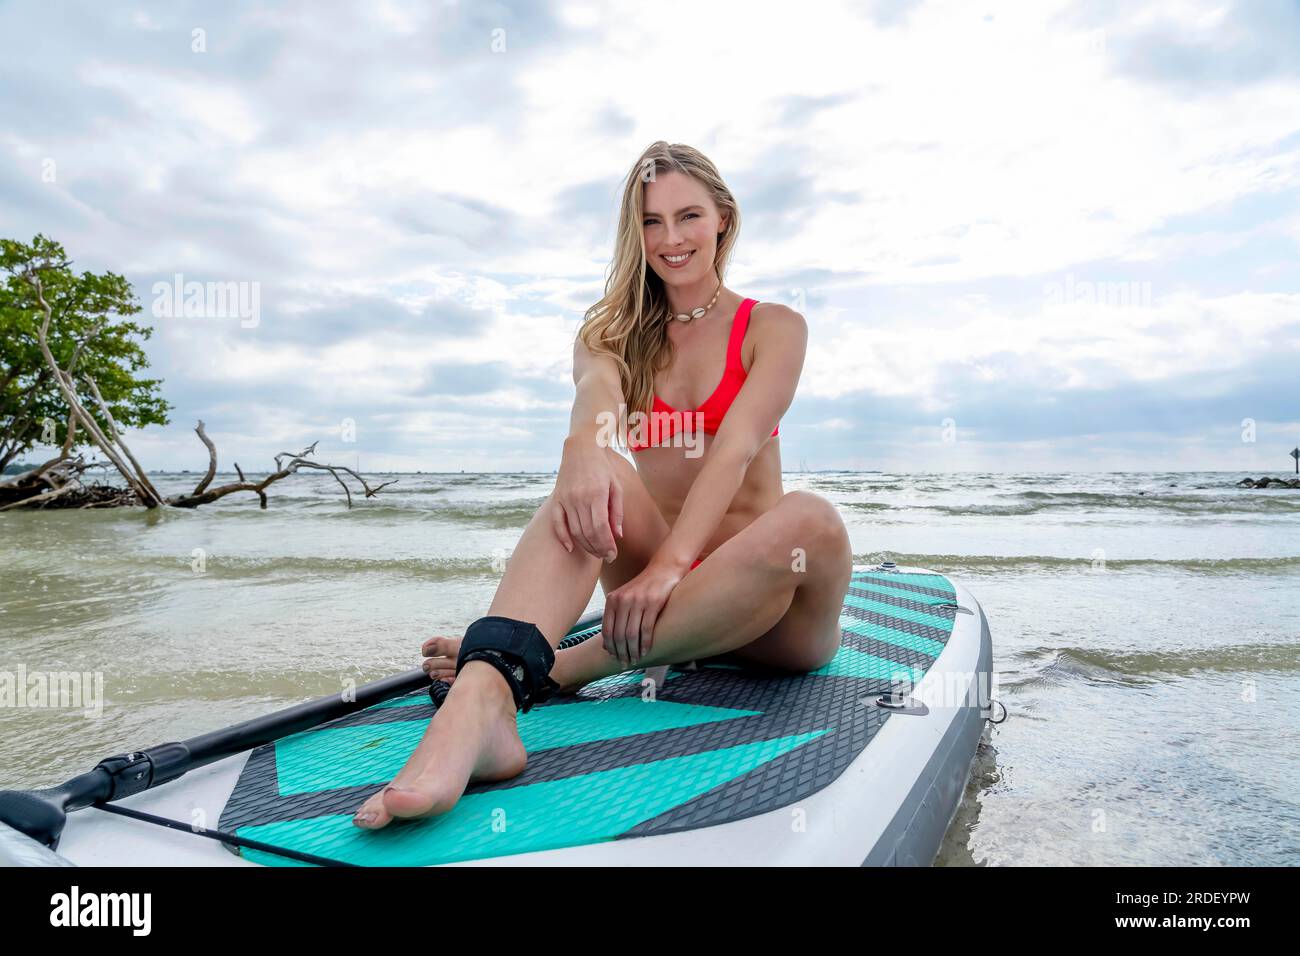 Un beau modèle blond profite d'une journée d'été tout en se préparant à surfer sur l'océan avec son paddle board Banque D'Images